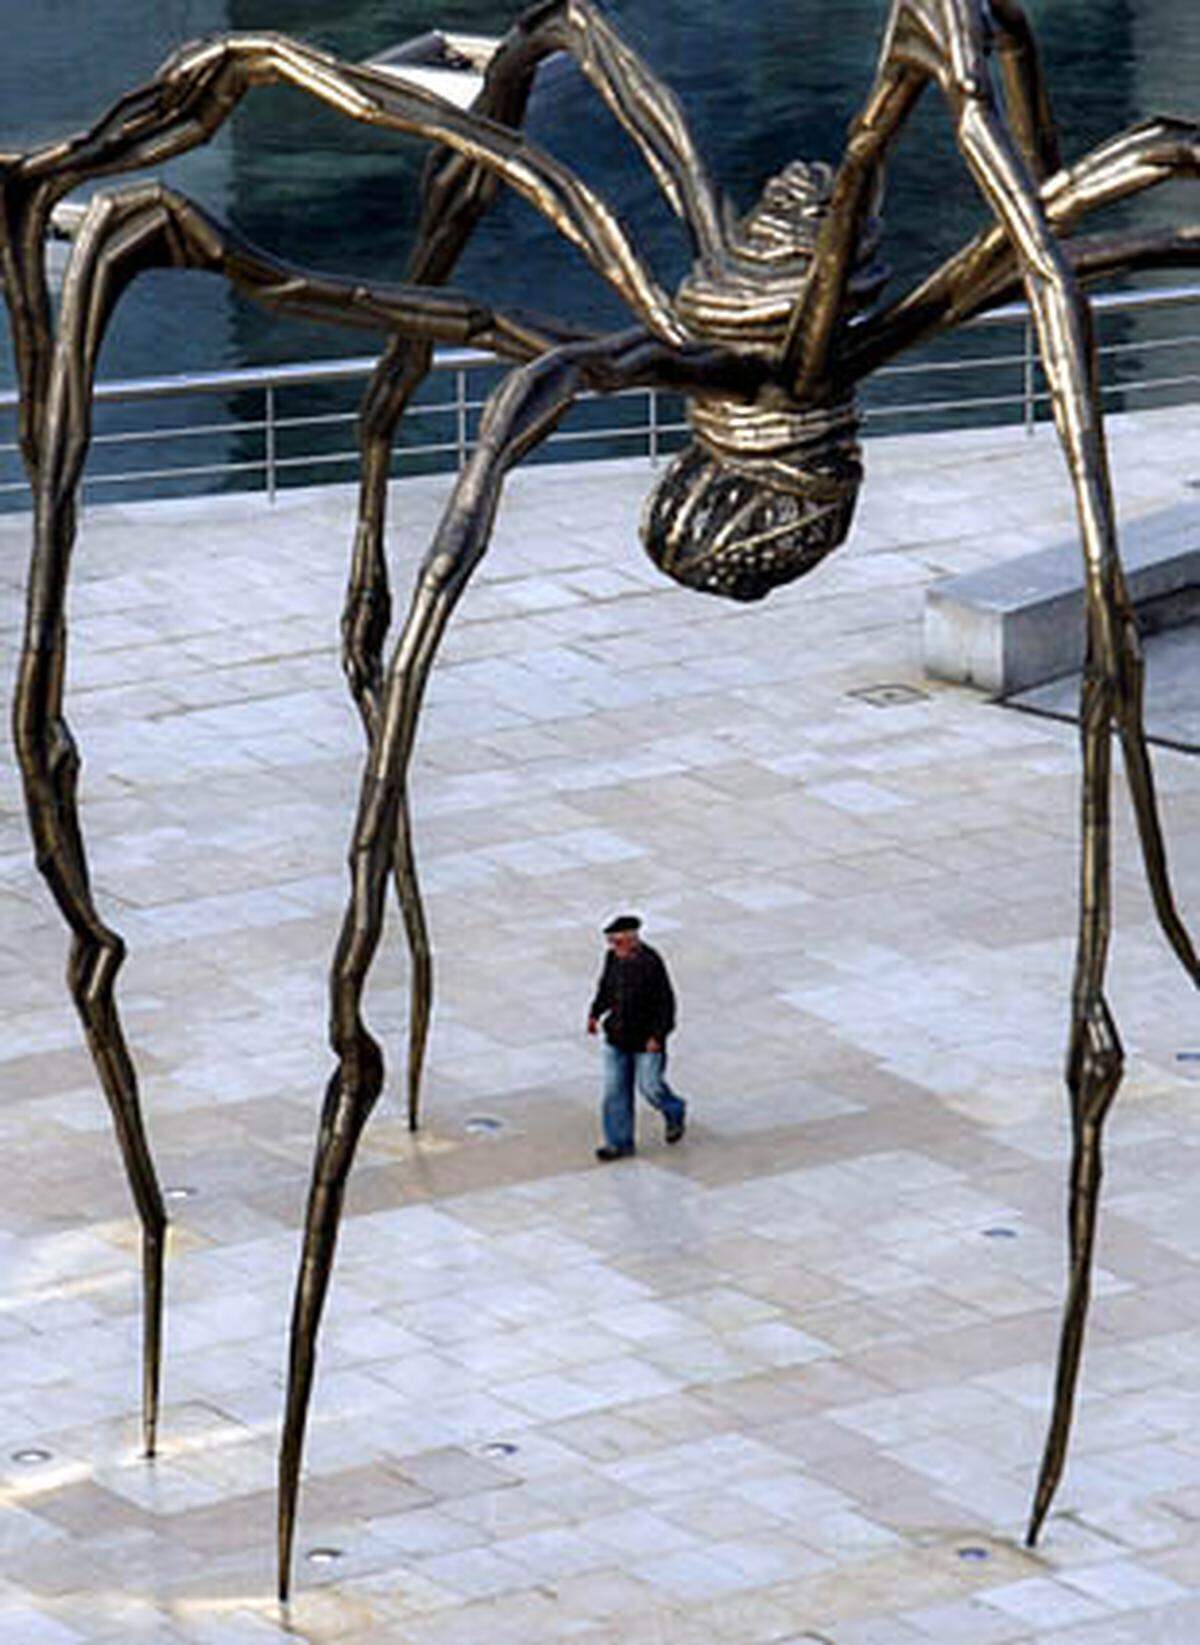 Bekannt ist Bourgeois vor allem für ihre riesigen Spinnen aus Bronze, unter denen Menschen wie kleine Insekten wirken.  Die Skulpturen sind in zahlreichen großen Museen vertreten, darunter im New Yorker Museum of Modern Art, im Centre Pompidou in Paris, in der Londoner Tate Gallery und im Museum Ludwig in Köln.